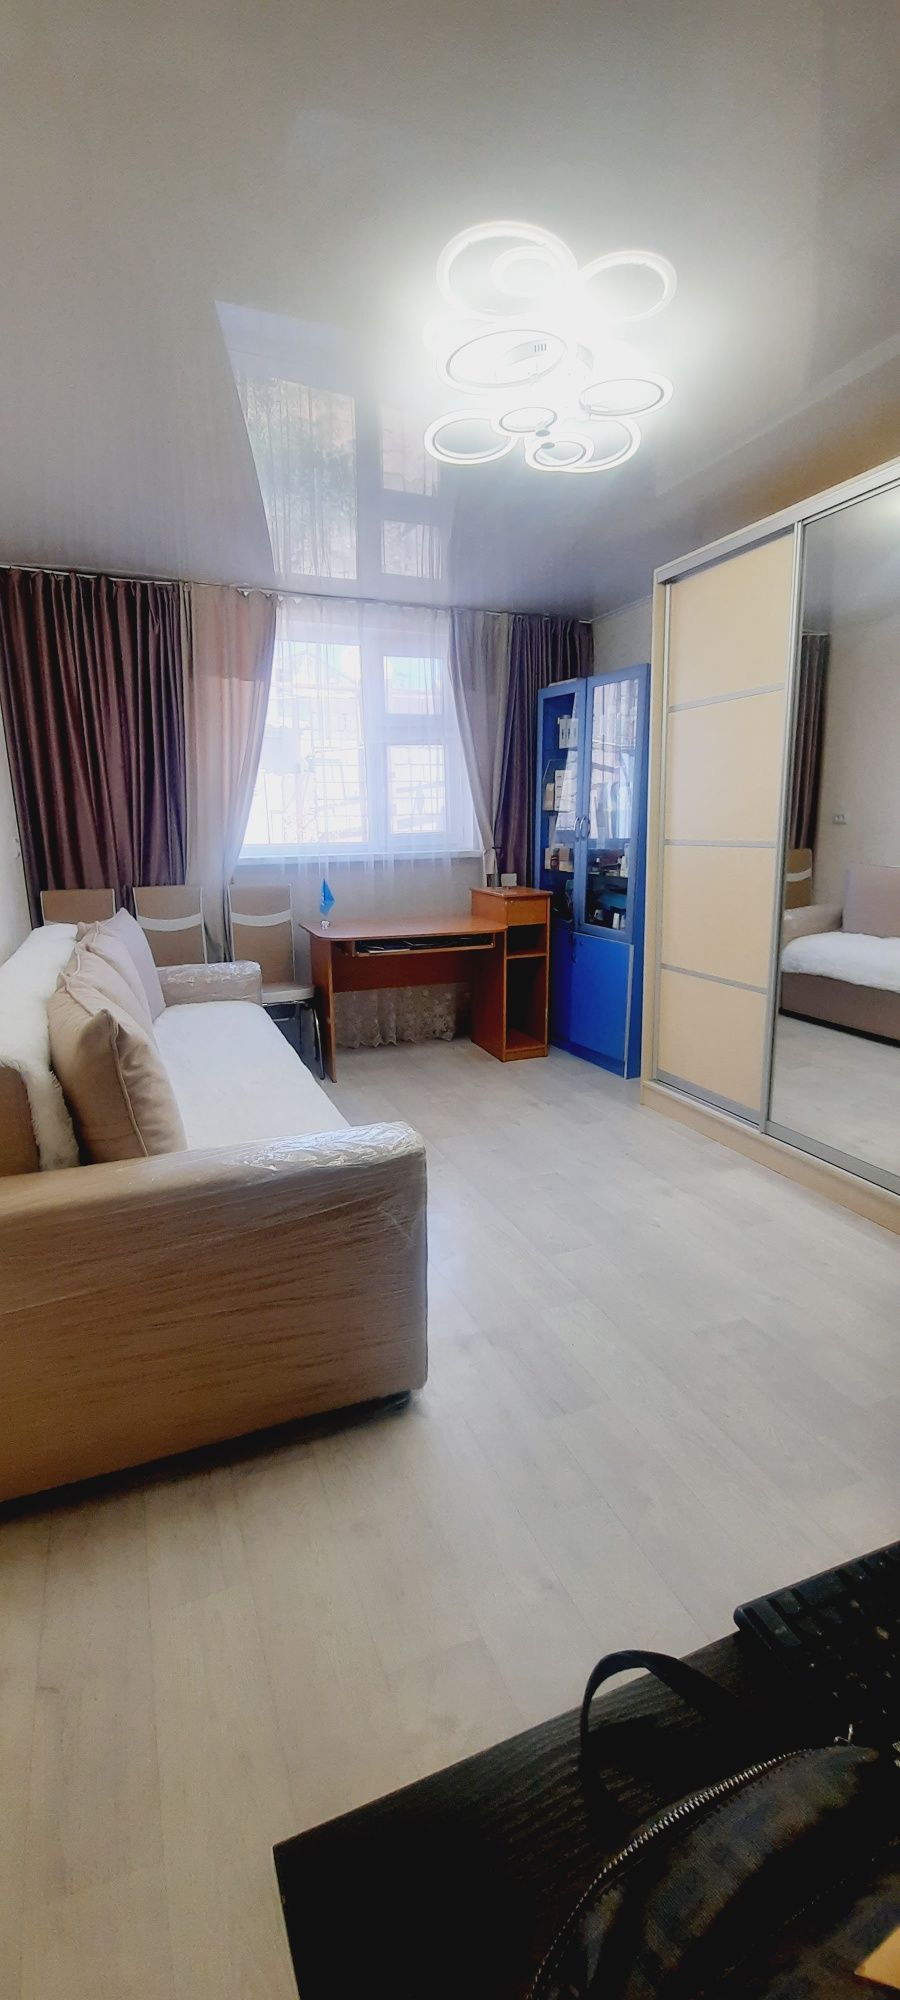 Продается 3х комнатный  дом в городе Шымкенте!